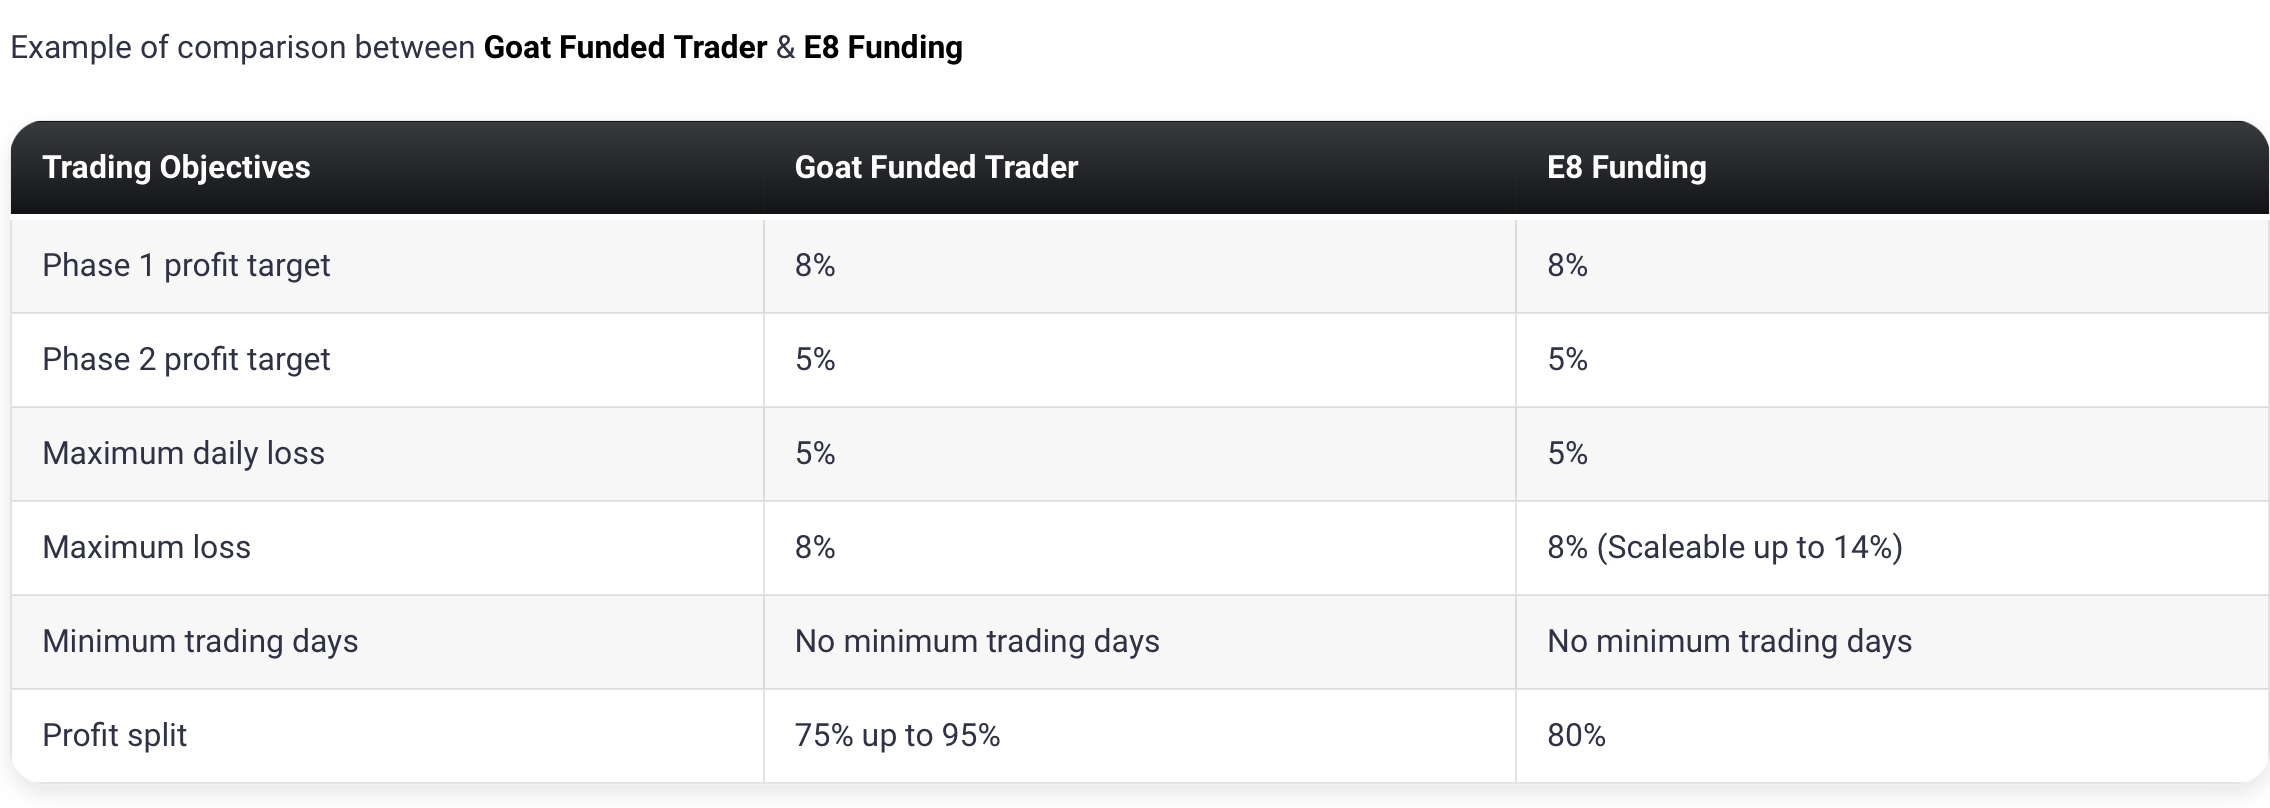 Goat Funded Trader8